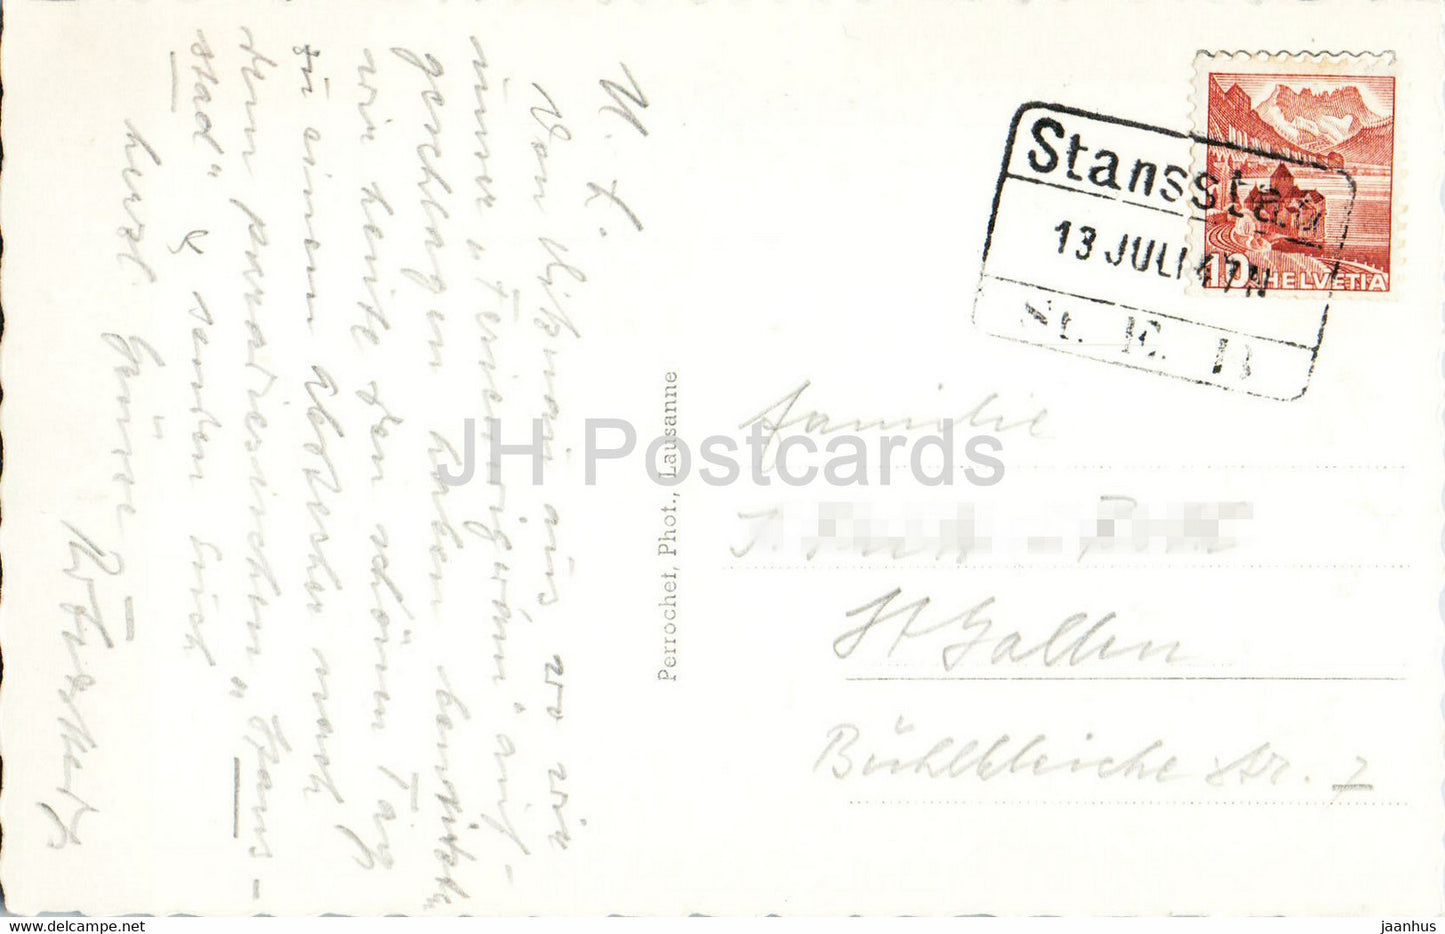 Stimmung mit Stanserhorn - Rugenstock u Pilatus - 8916 - 1947 - alte Postkarte - Schweiz - gebraucht